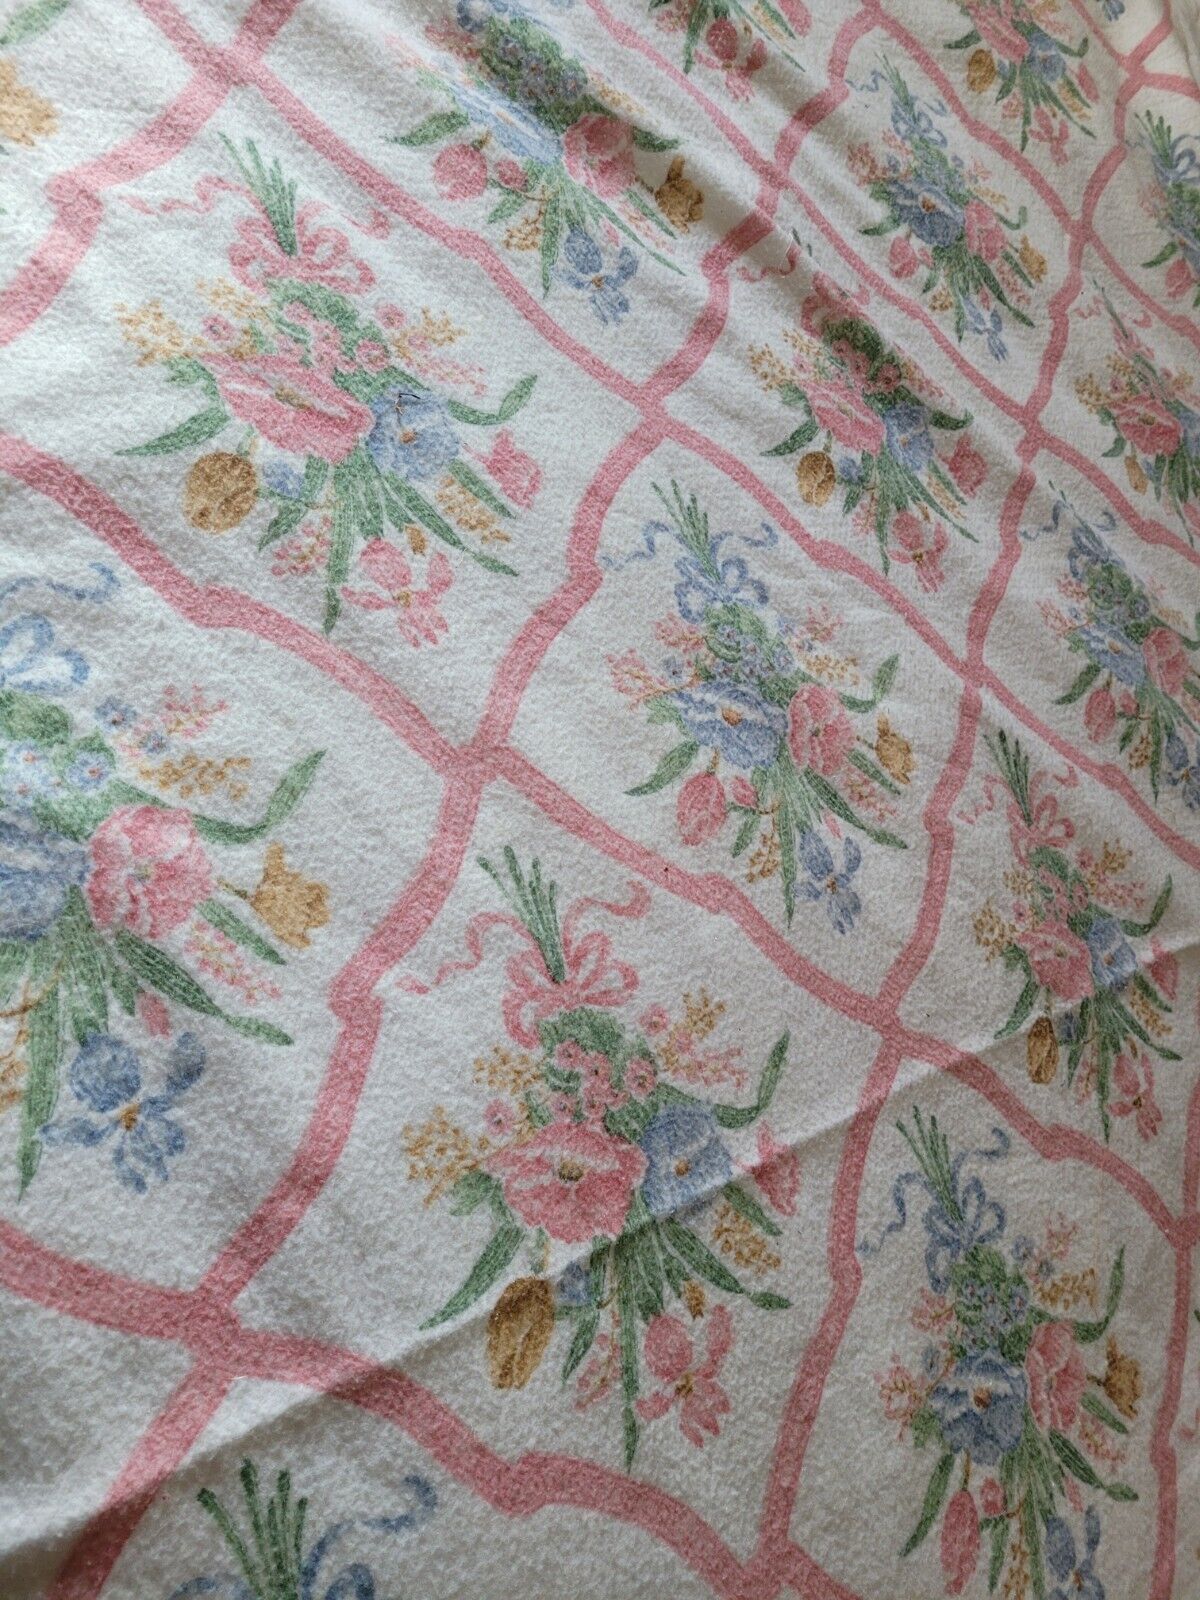 Vintage Twin Sized Springtime Floral Blanket